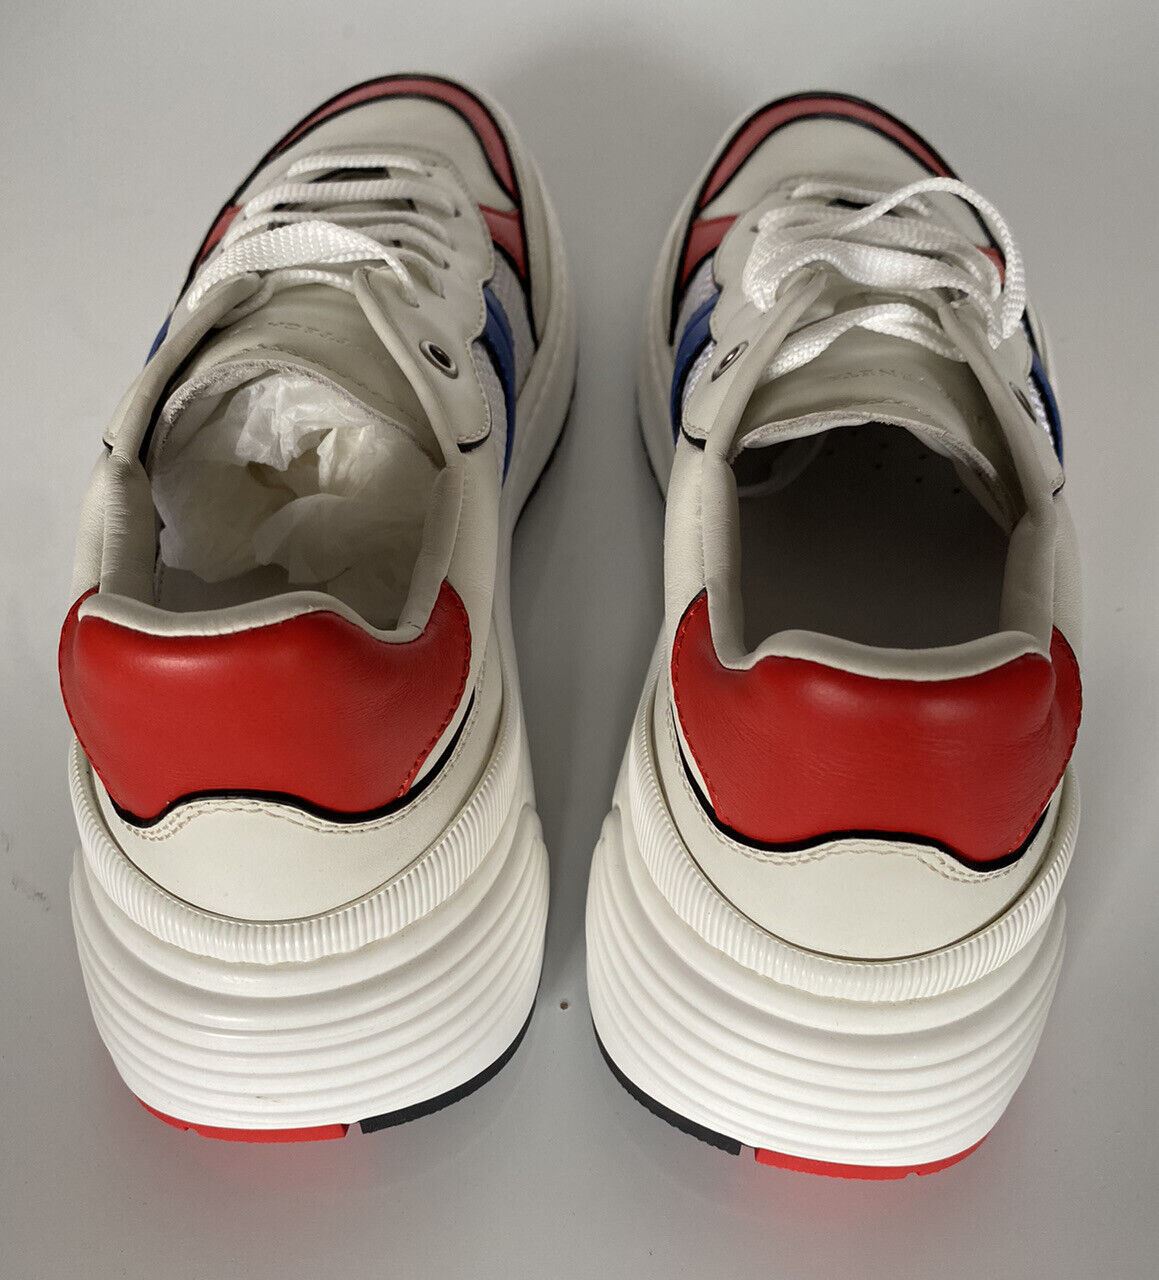 NIB Bottega Veneta Herren-Sneaker aus Leder und Mesh, Weiß/Rot/Blau, 10 US 565646 9080